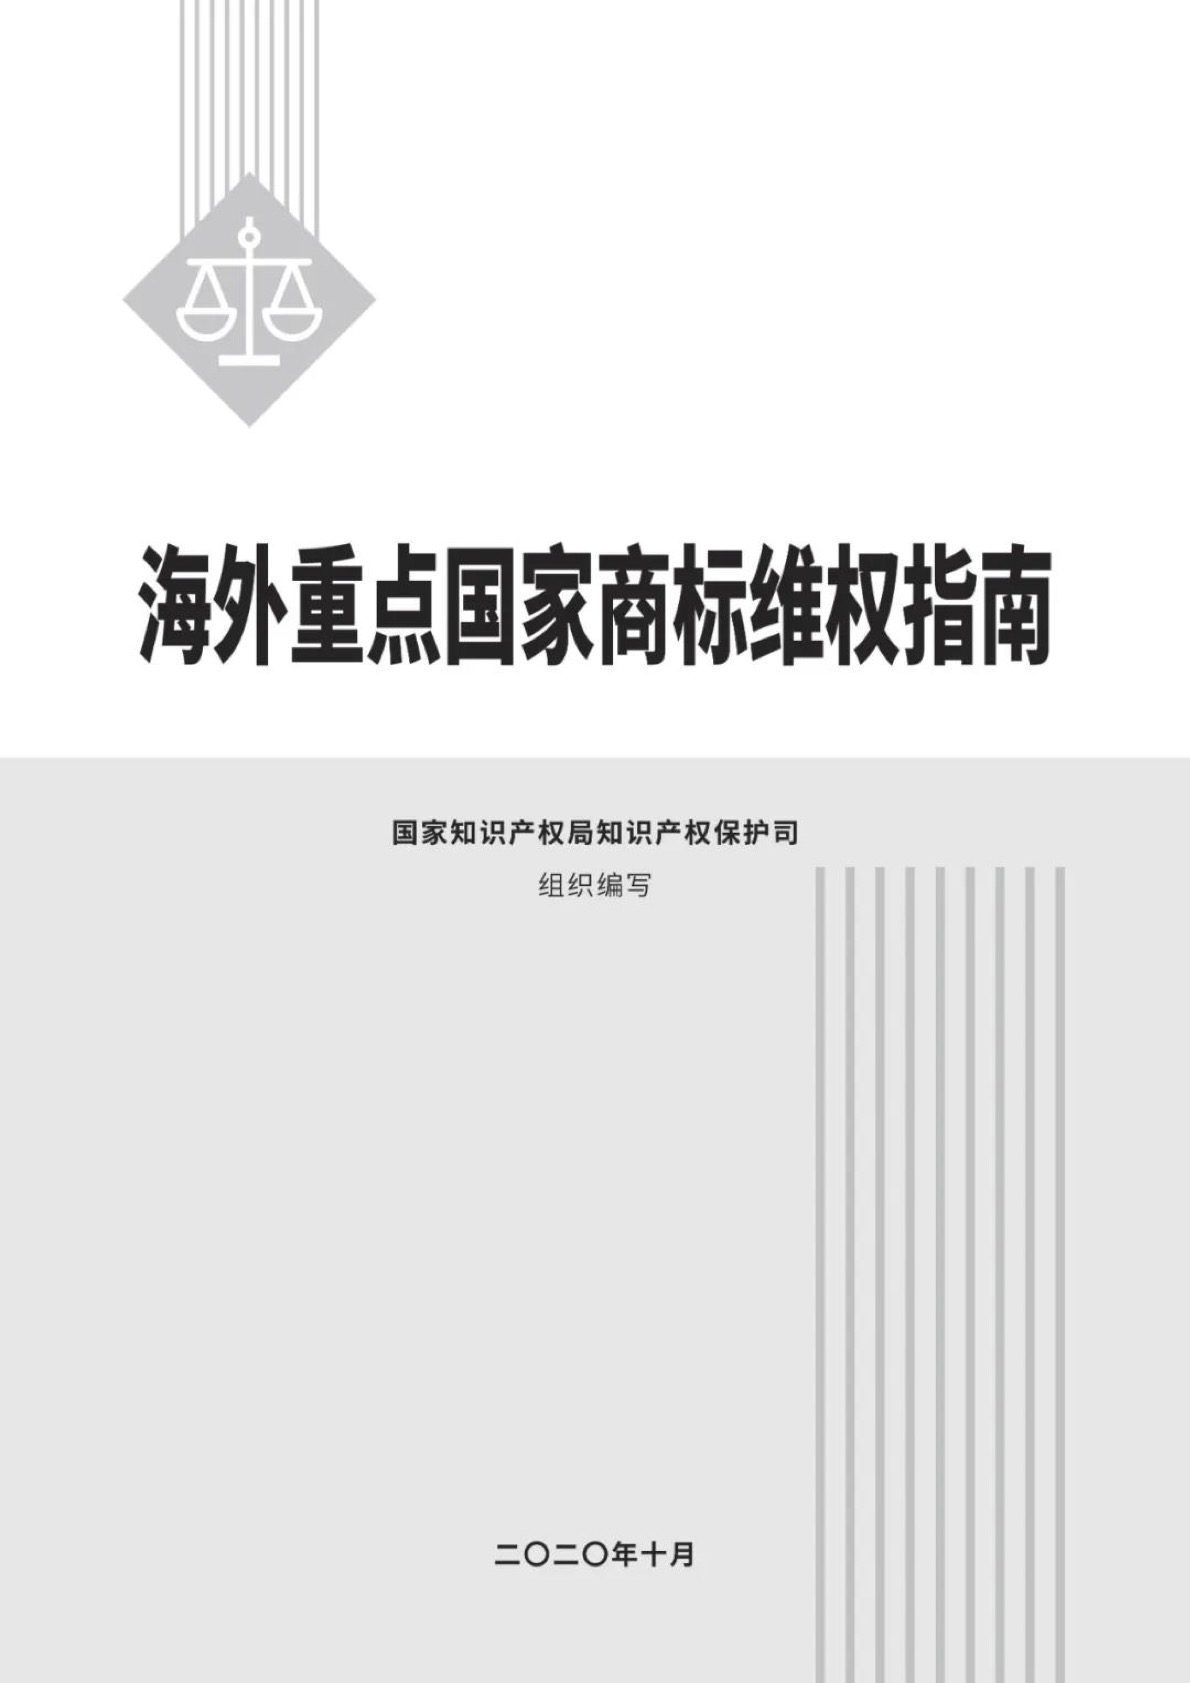 《海外重点国家商标维权指南》PDF全文